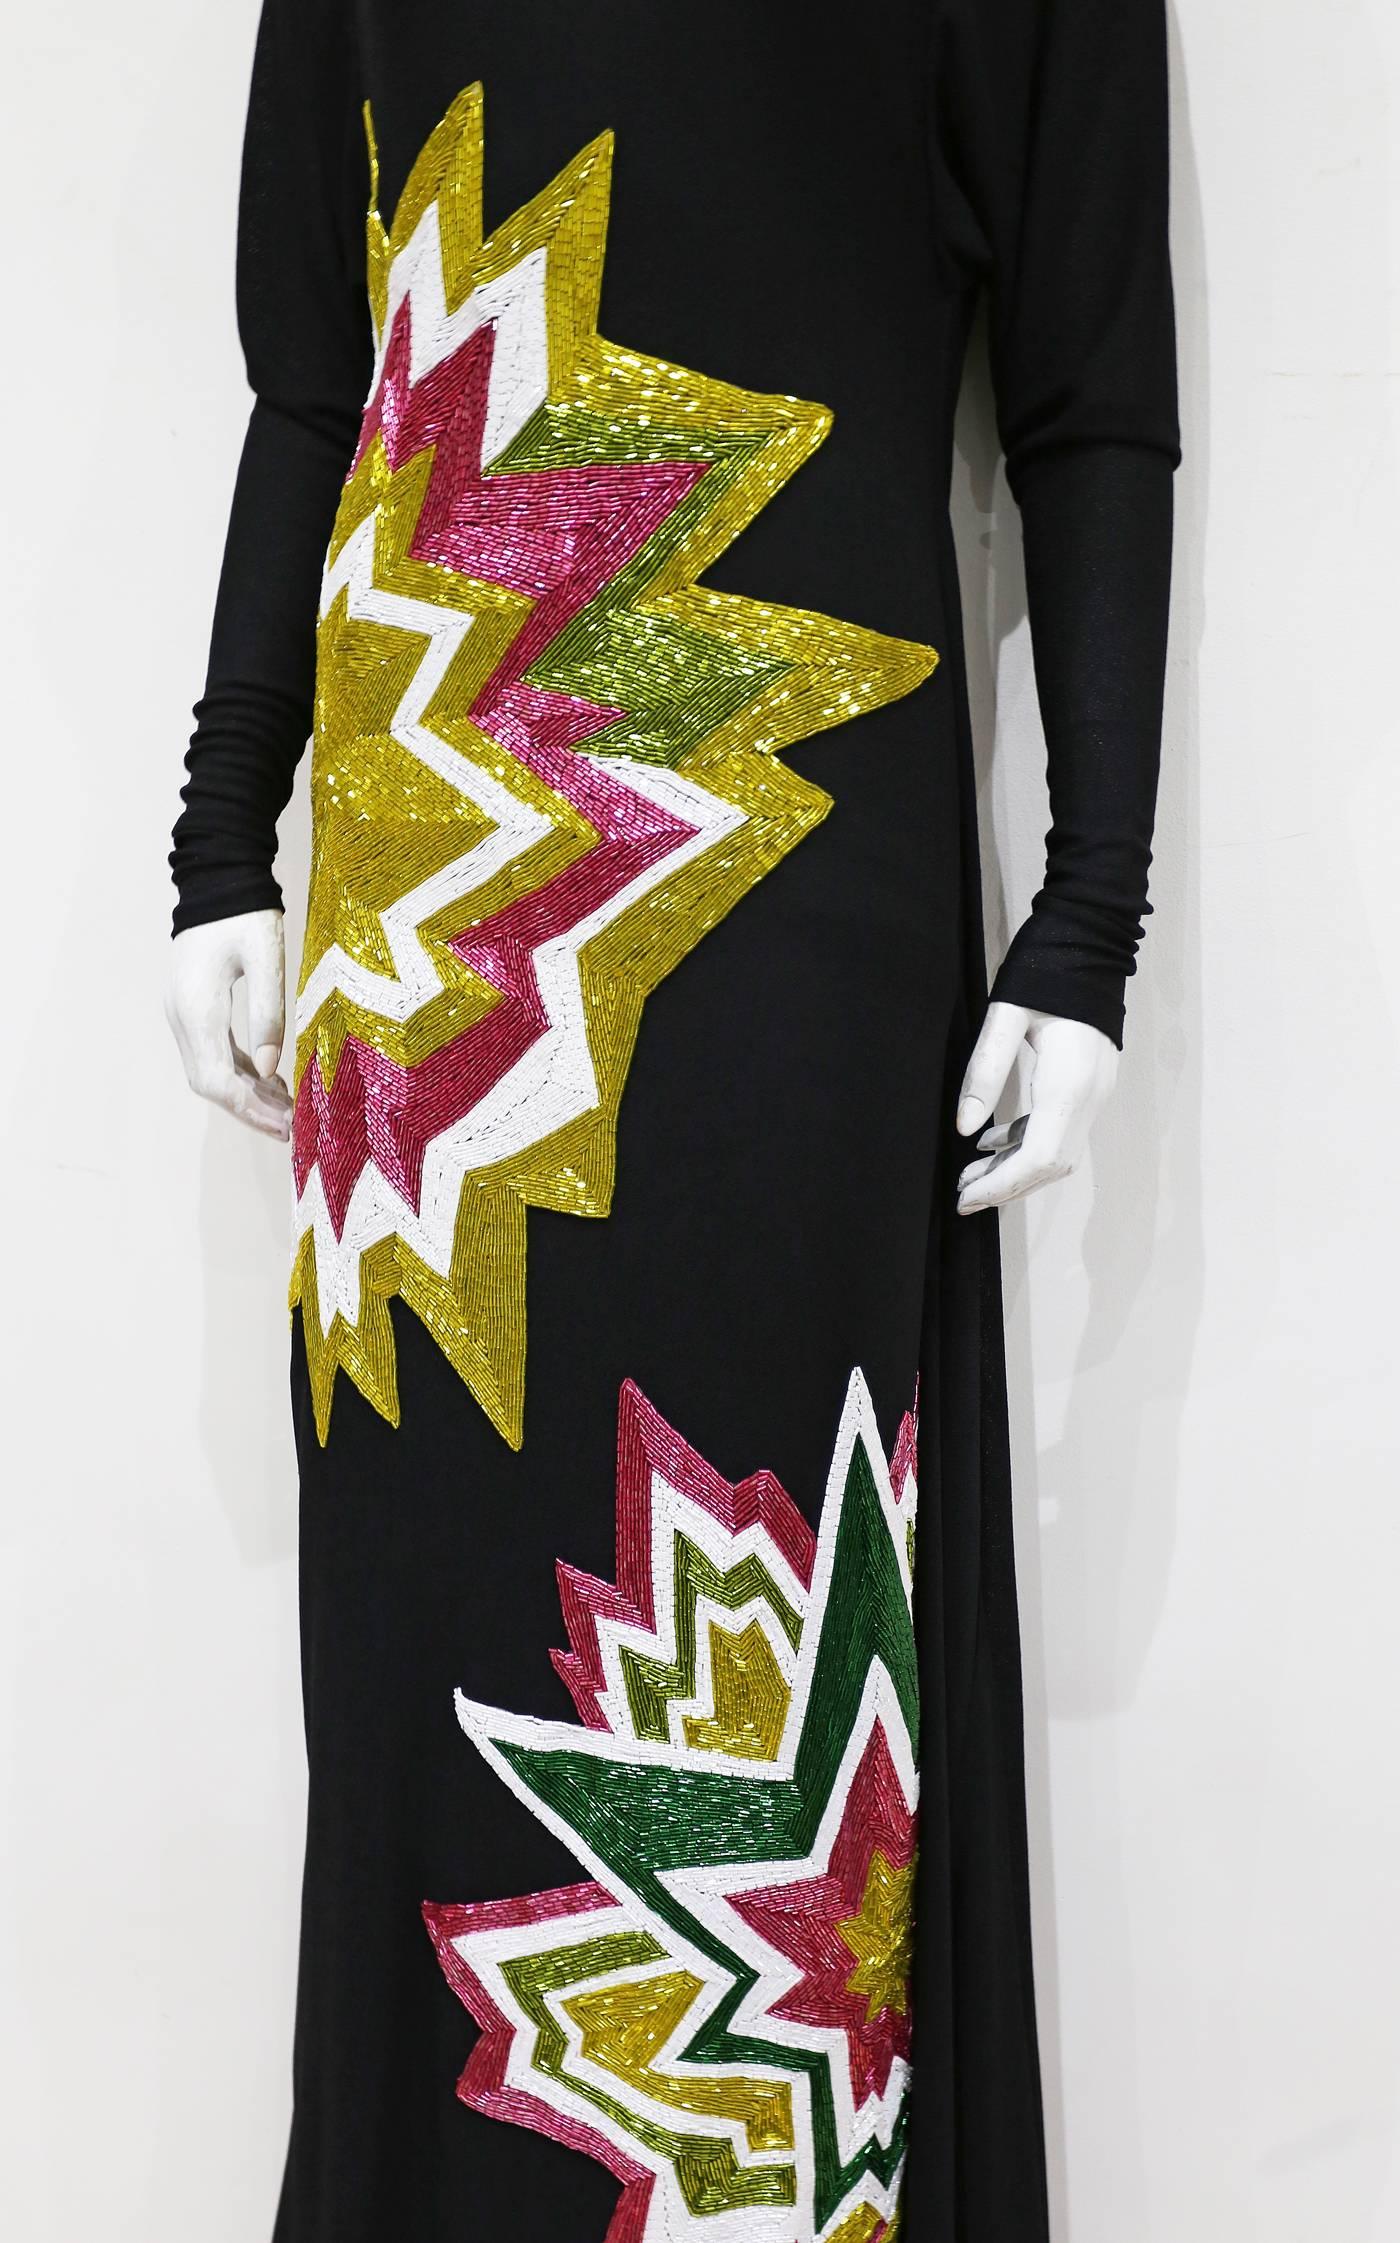 Women's Tom Ford Embellished Pop Art Inspired Black Evening Dress, C. 2013